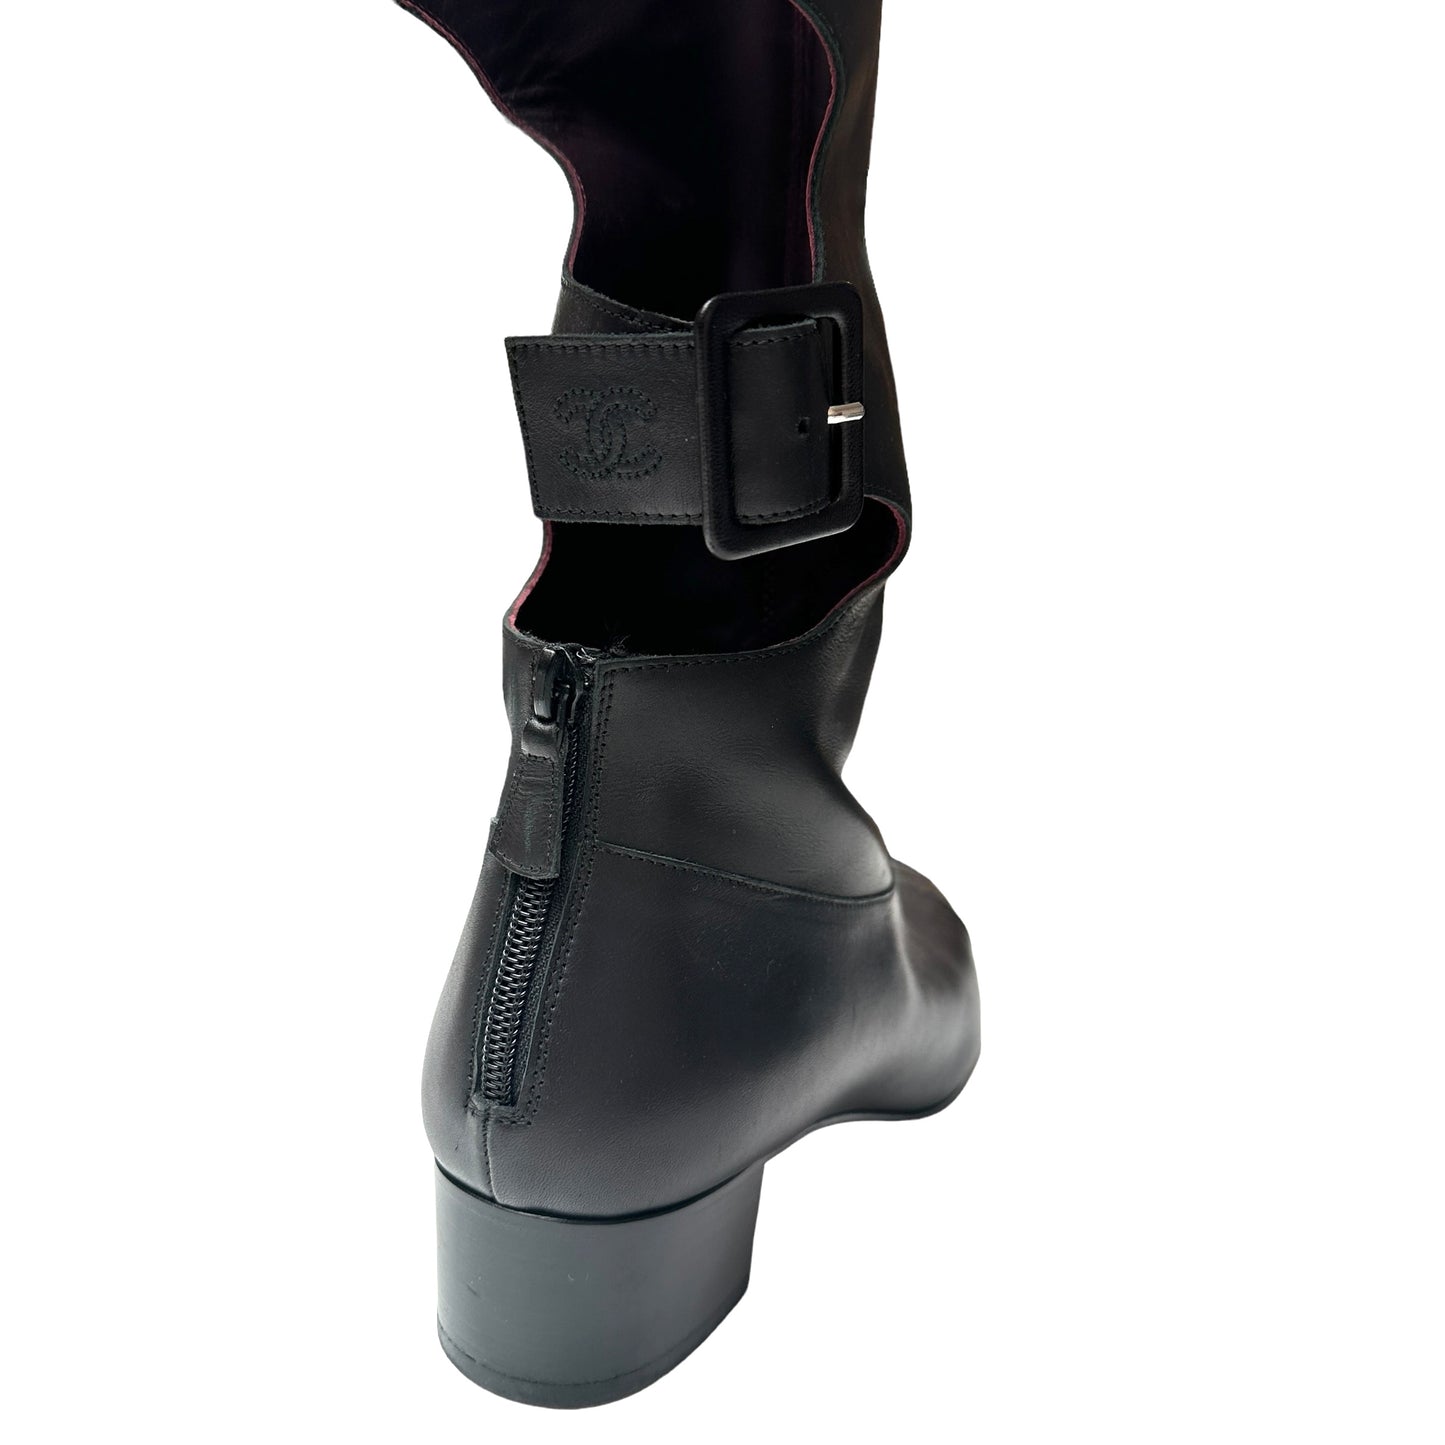 Black Tall Boots - 9.5